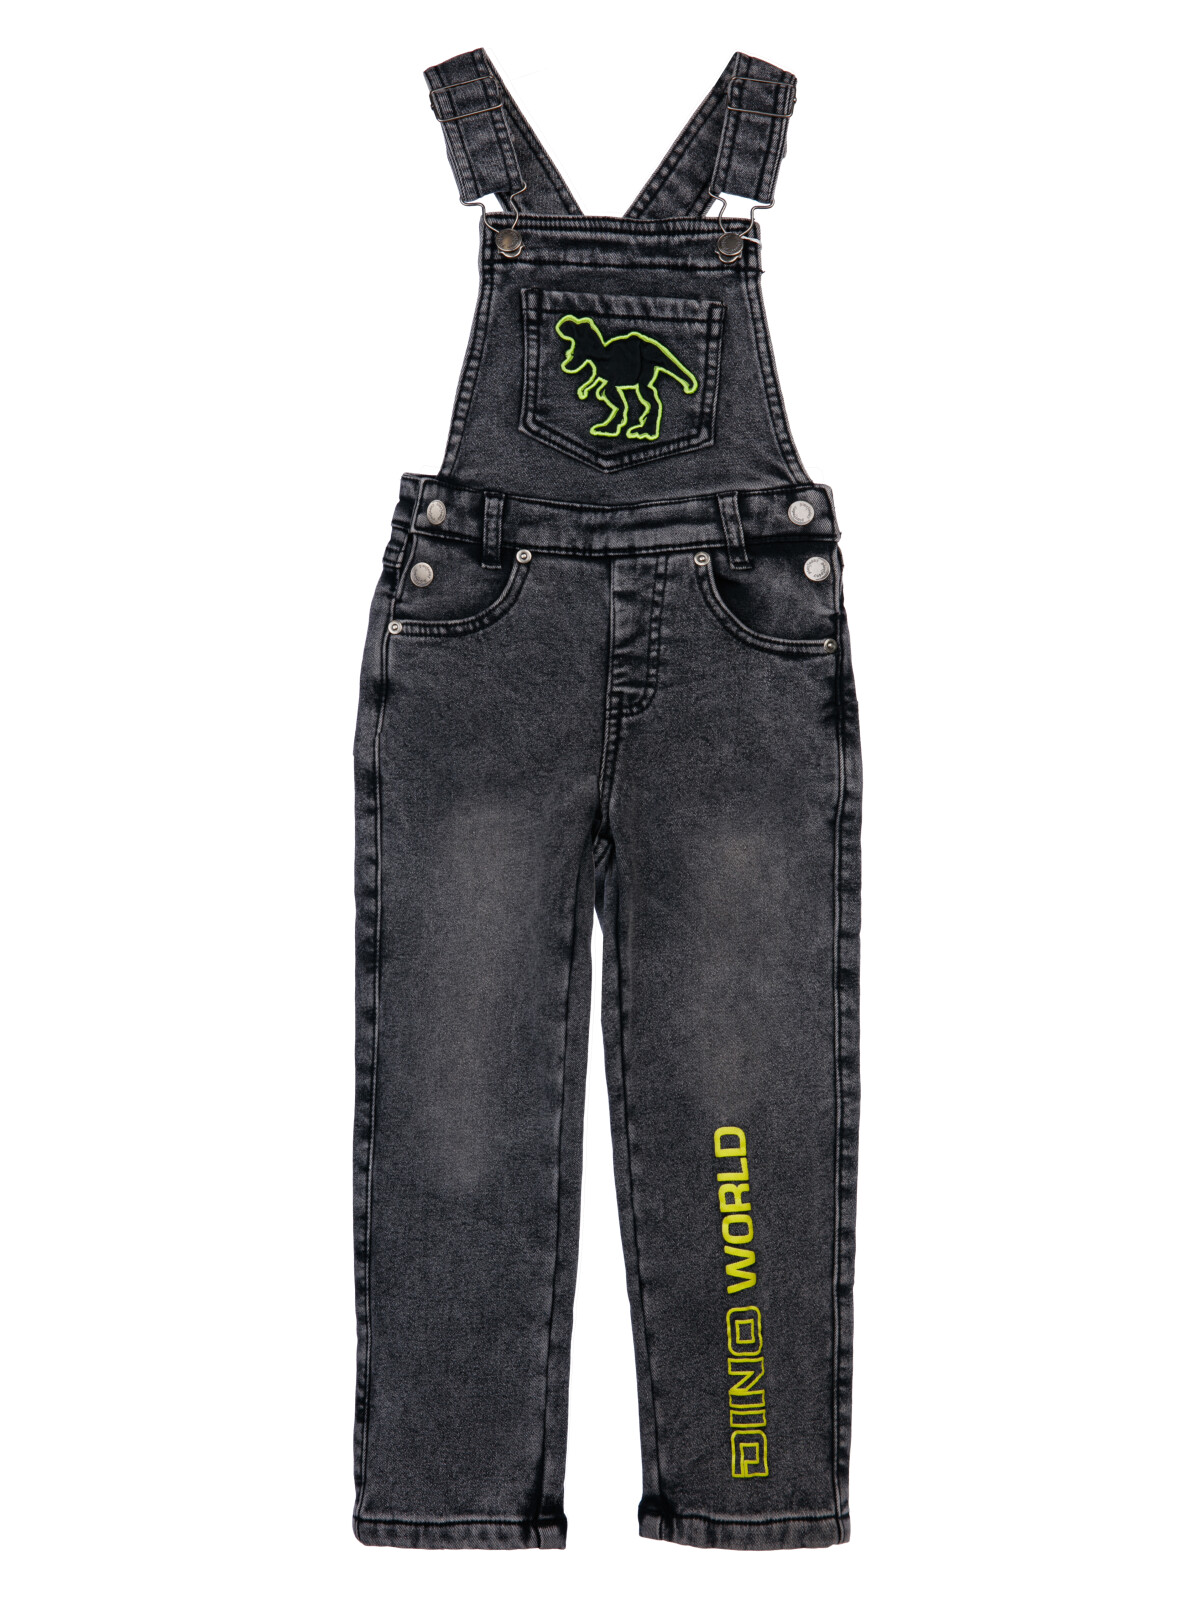 Полукомбинезон текстильный джинсовый утепленный флисом для мальчиков PlayToday, черный, 98